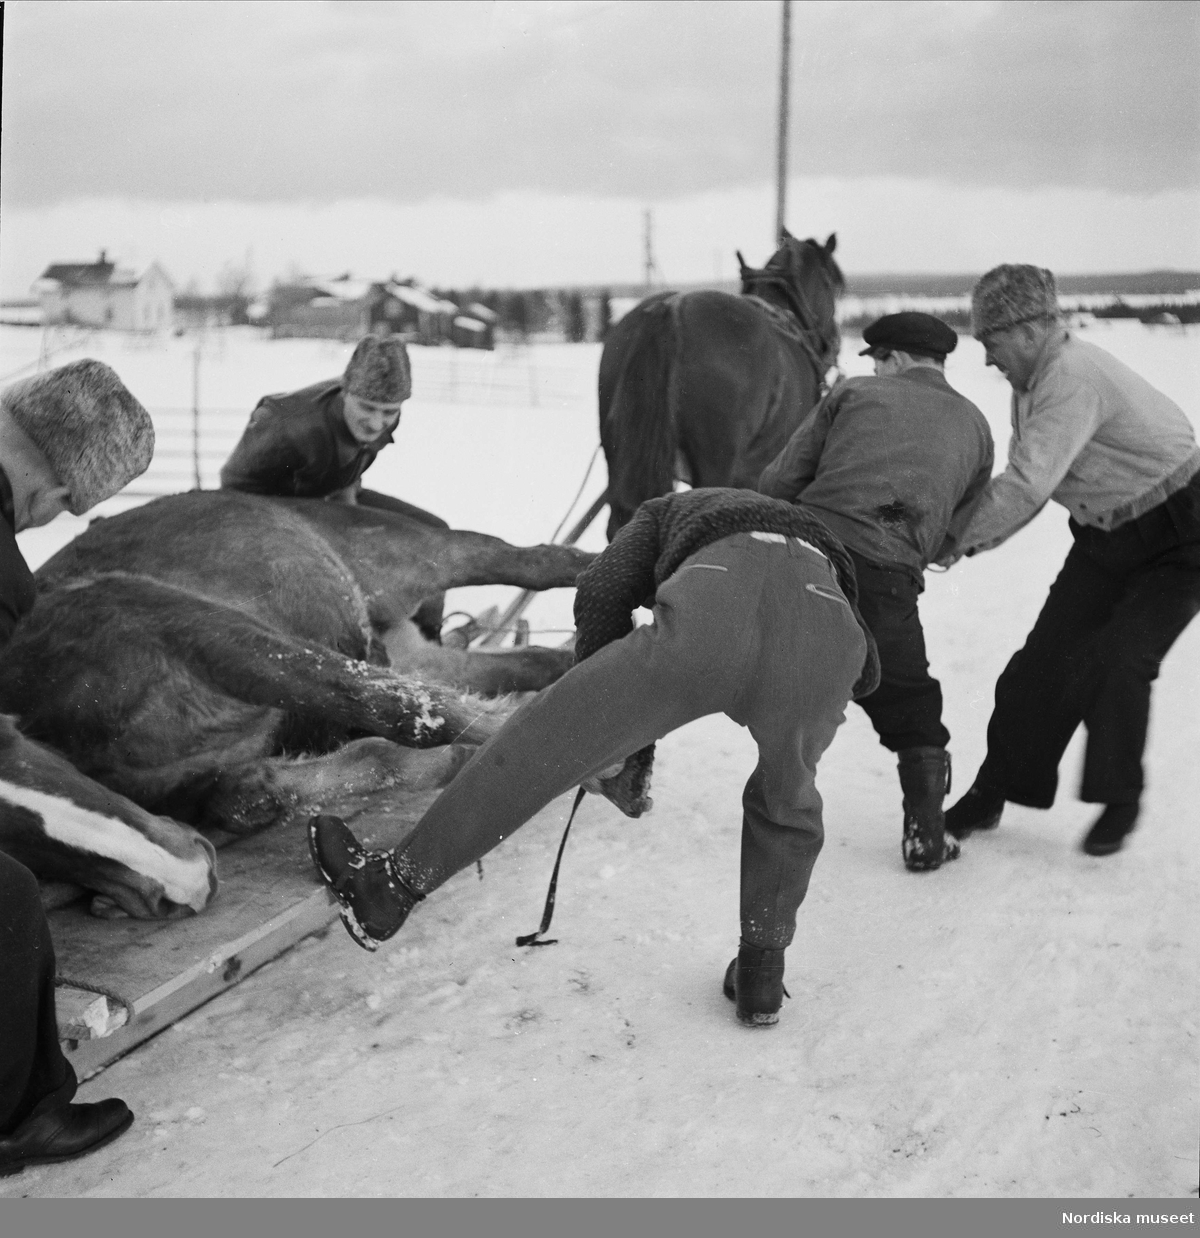 Död häst baxas upp på kälkflak. "Otto Hemmingssons häst föll död ned på landsvägen i Ede". Jämtland, Hammerdals sn, Ede